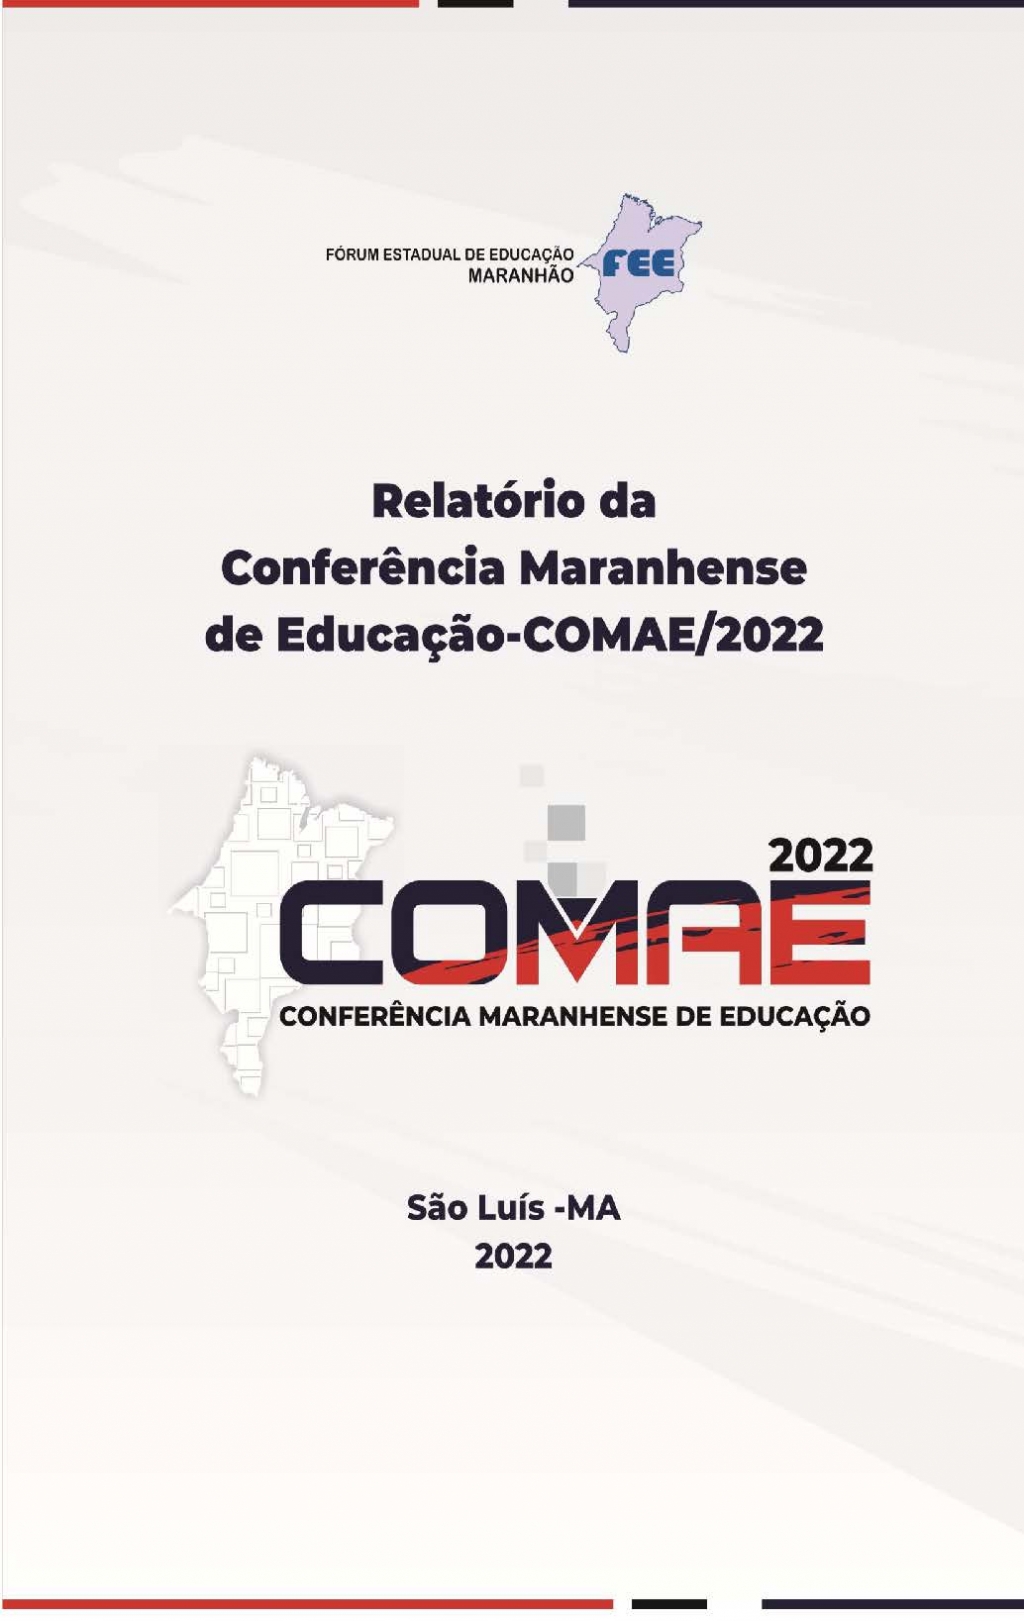 Fórum Estadual de Educação do Maranhão: Relatório da Conferência Maranhense de Educação – COMAE - 2022 (DISPONÍVEL PARA DOWNLOAD)